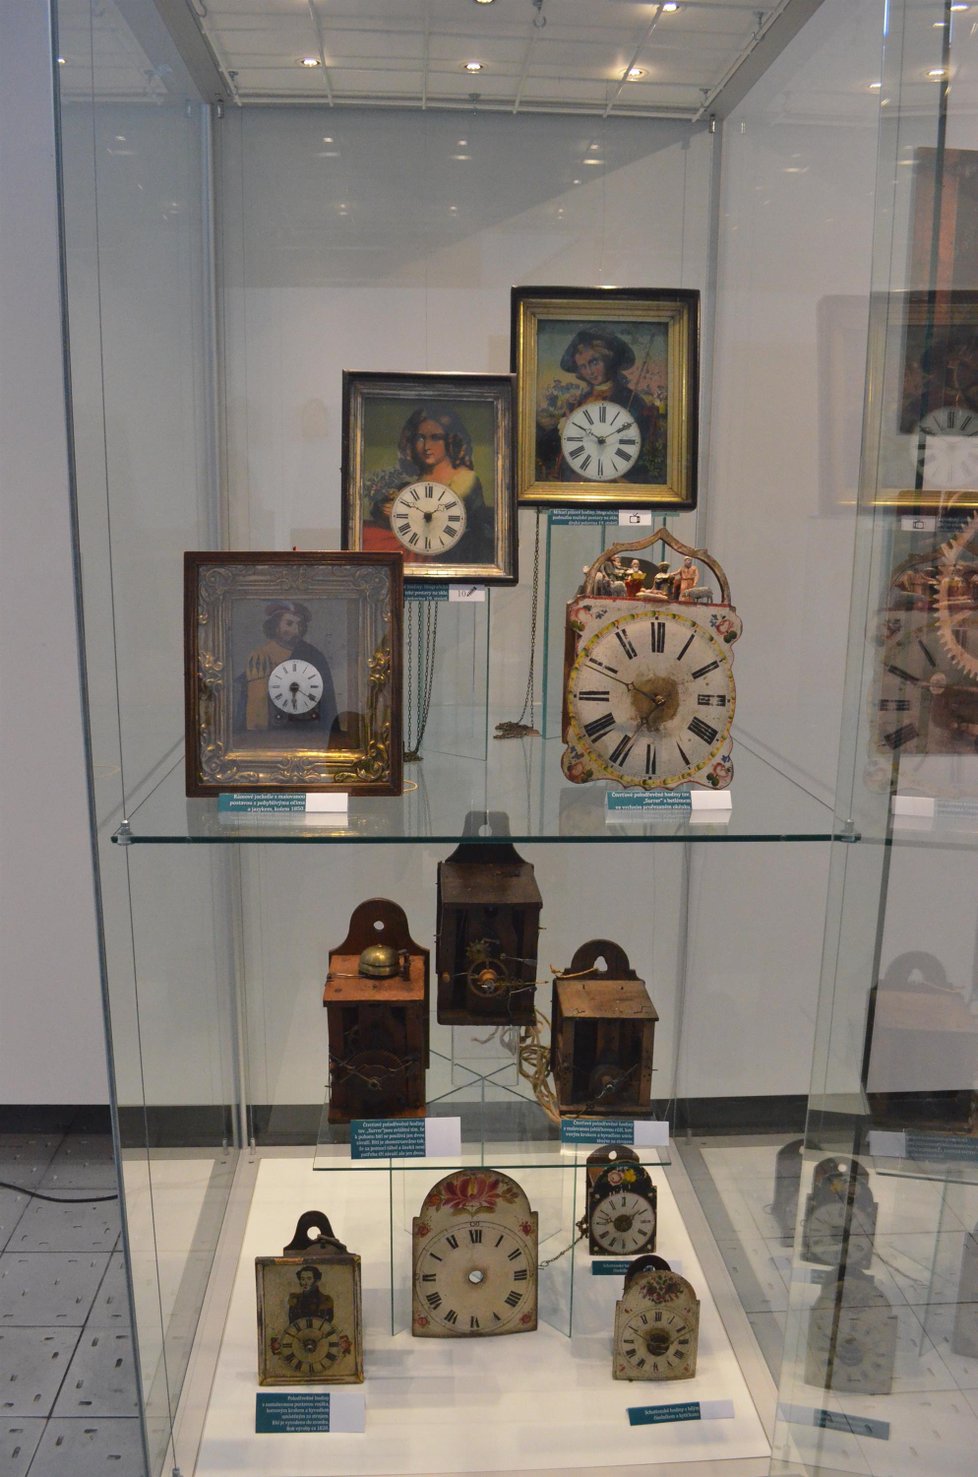 Mezi rarity patří hodiny s portréty (nahoře). Muži a ženy při bití hodin mrkají očima.